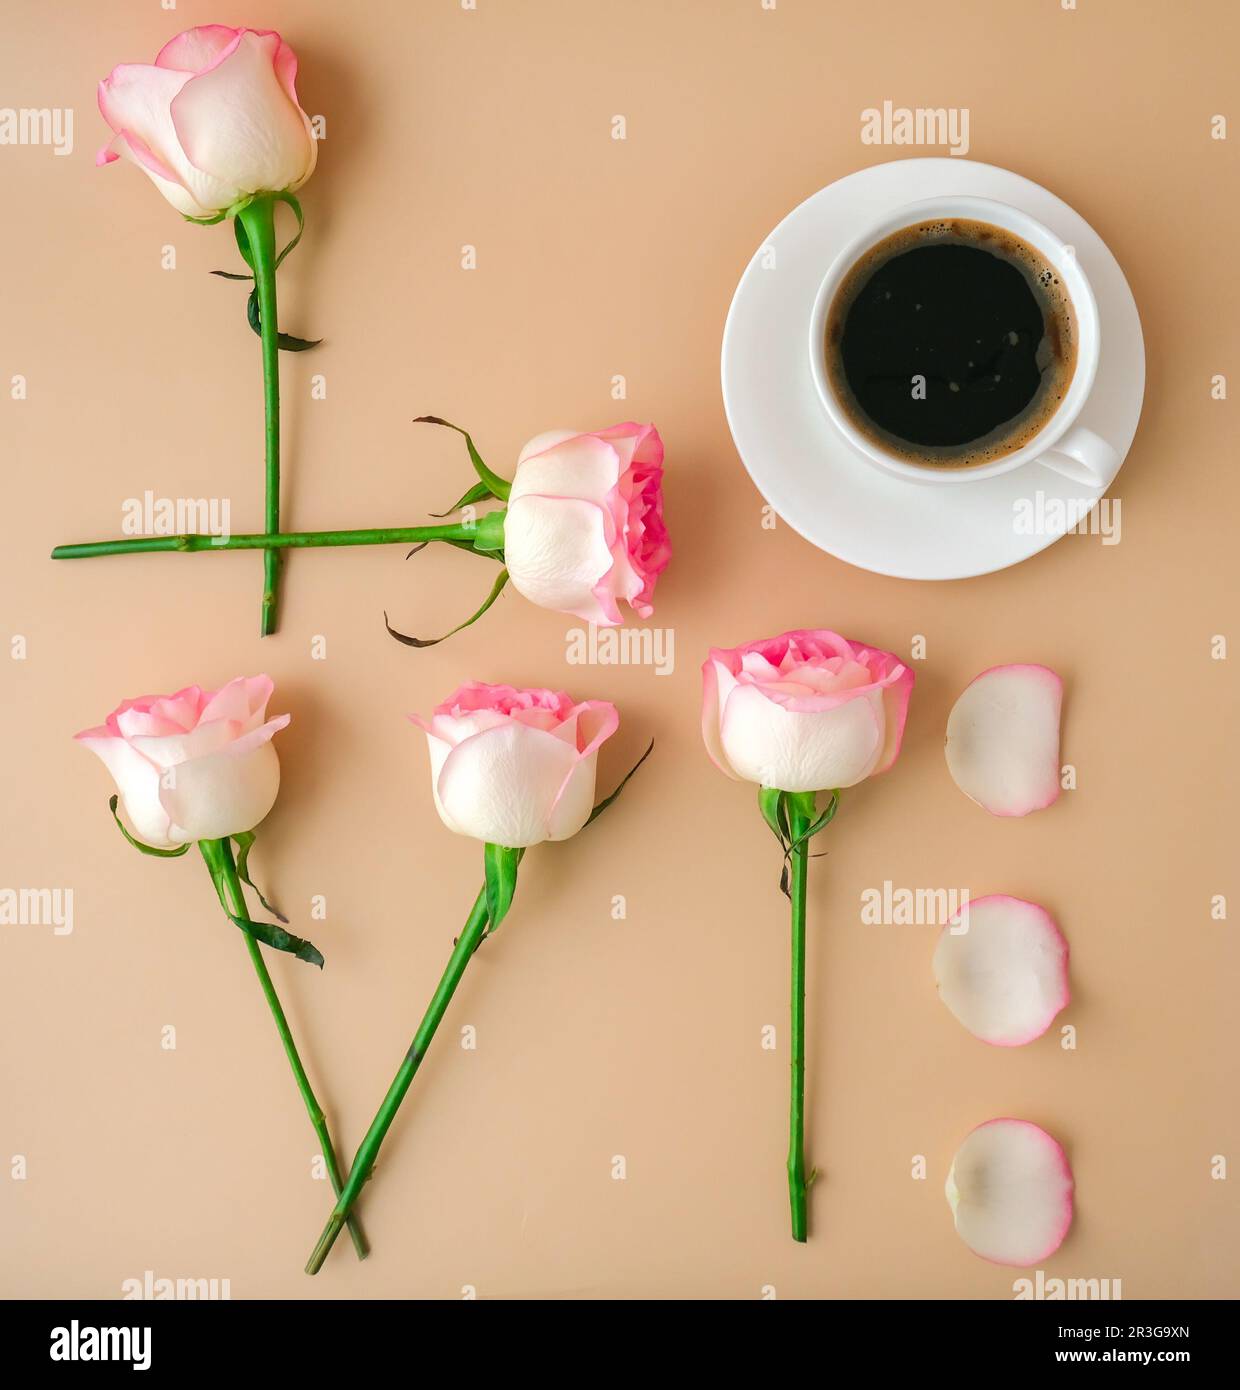 Mot AMOUR fait de fleurs roses rose tendre et tasse de café sur fond beige. Concept d'amour. Pose à plat. Composition minimale. ROM Banque D'Images